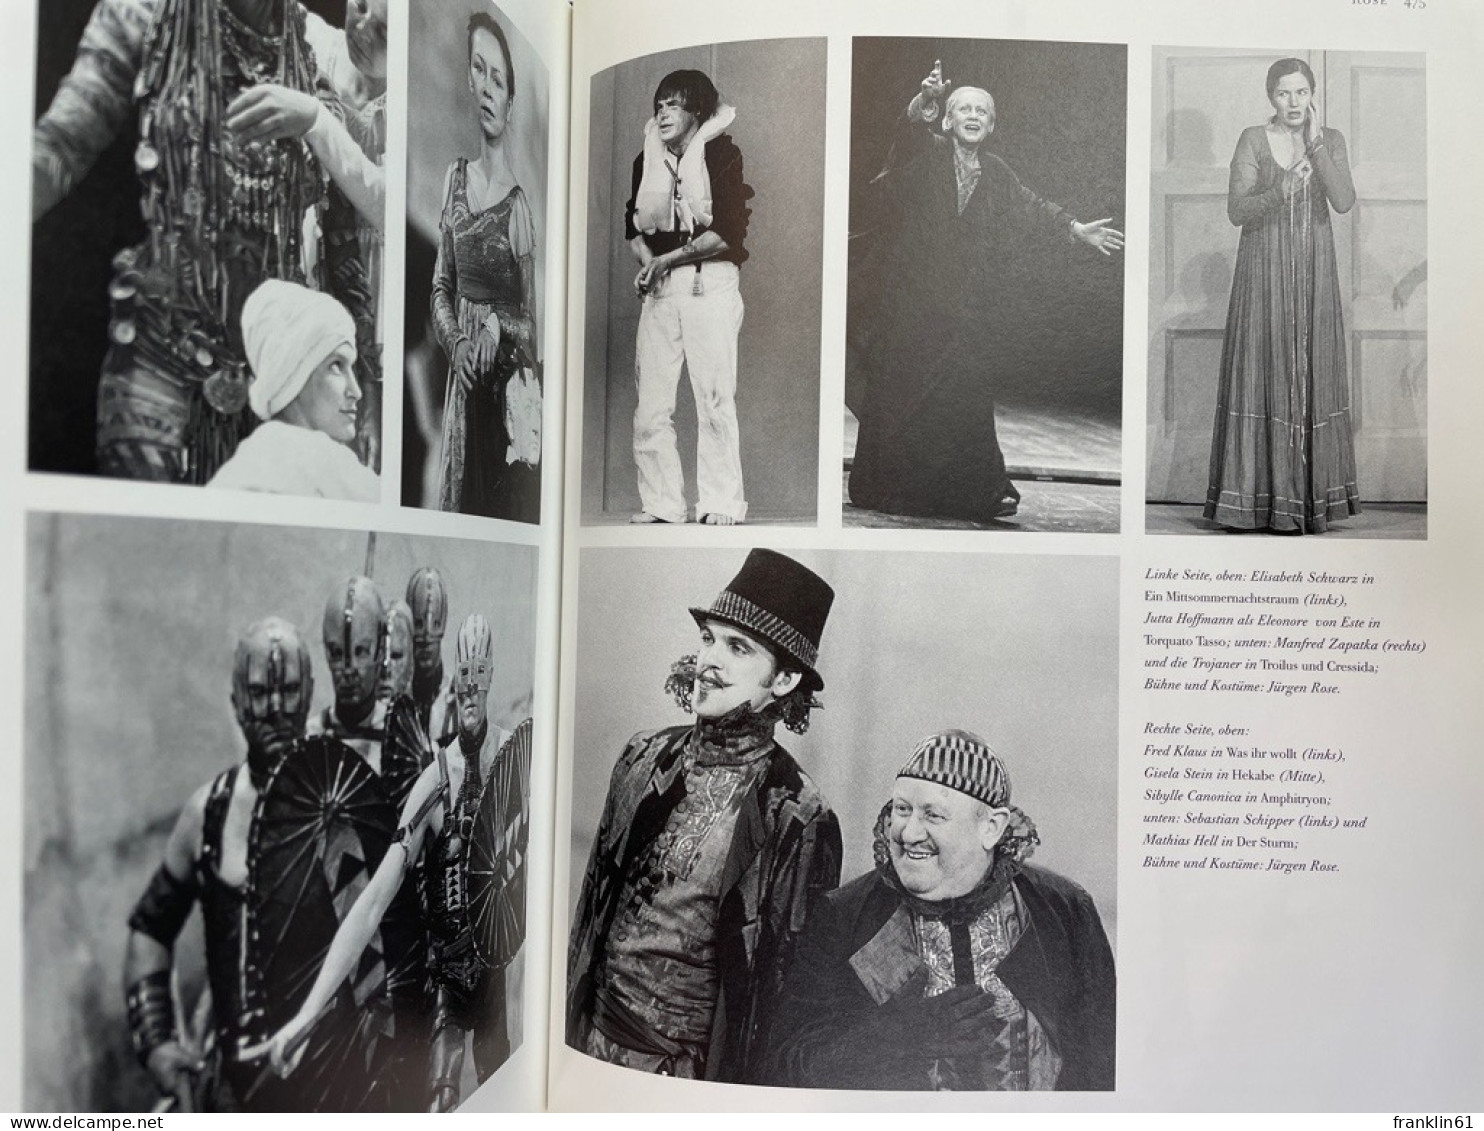 Die Münchner Kammerspiele : Schauspieler, Regisseure, Aufführungen, 1976 bis 2001.